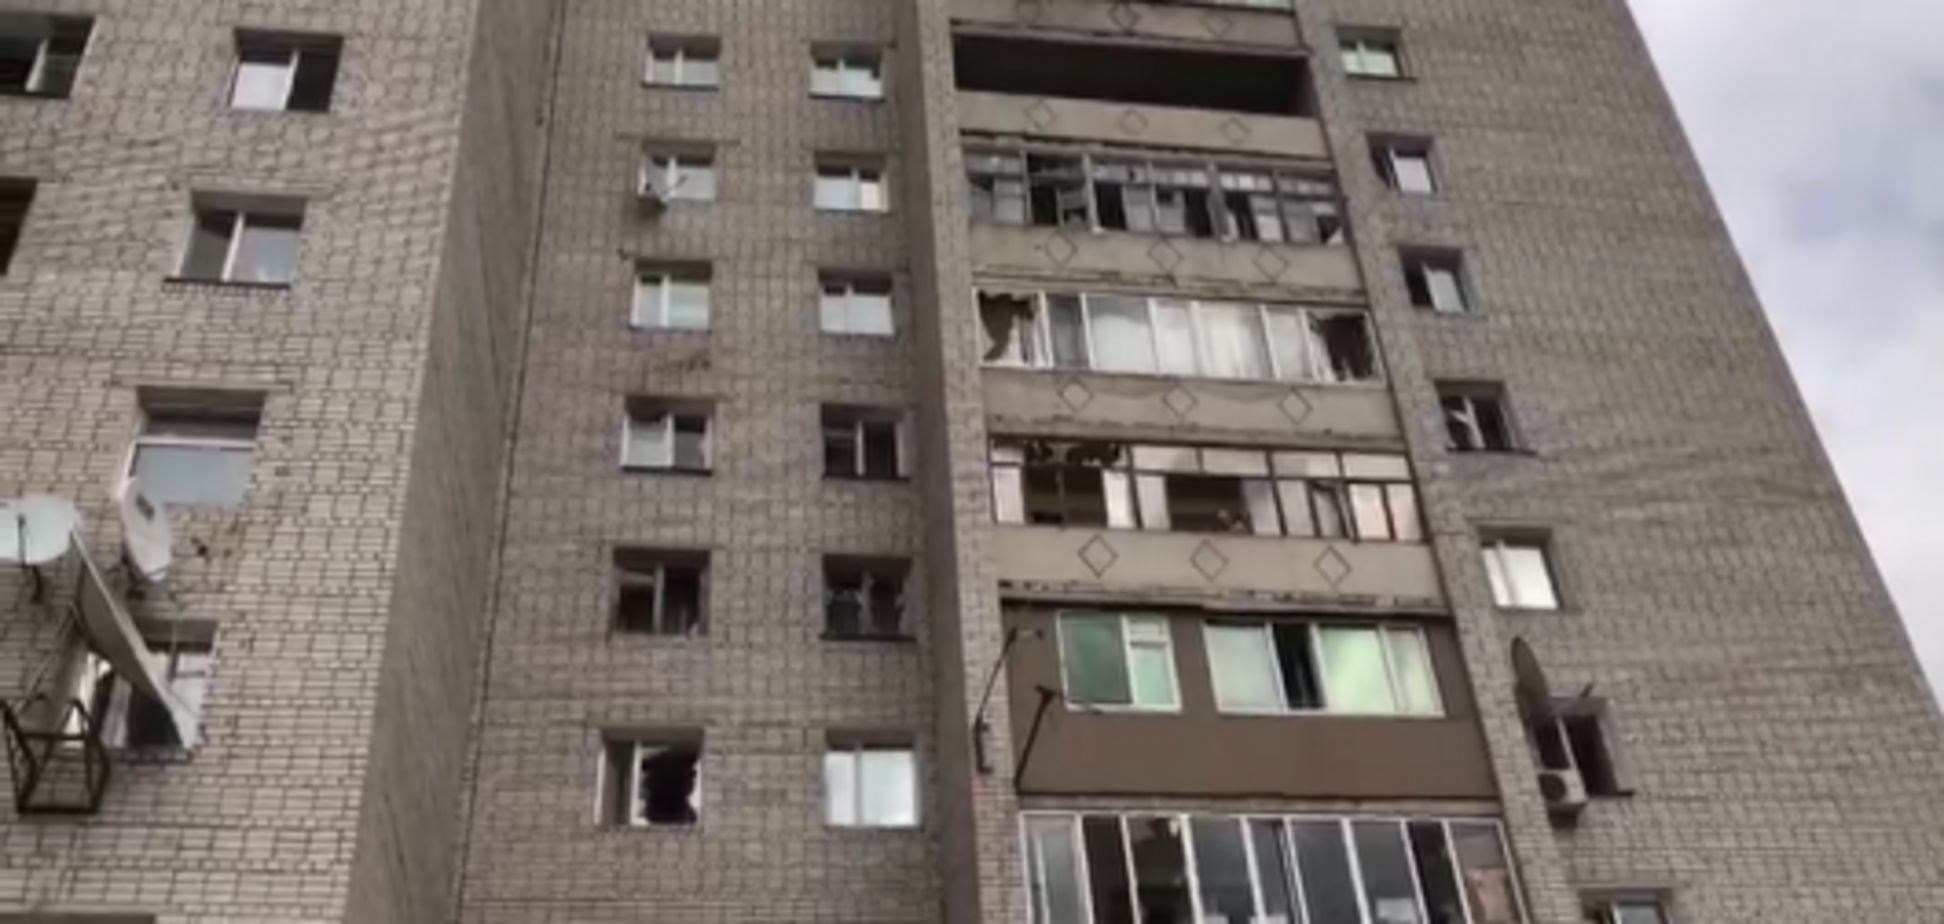 В домах вылетели стекла: мощный взрыв в Казахстане испугал людей